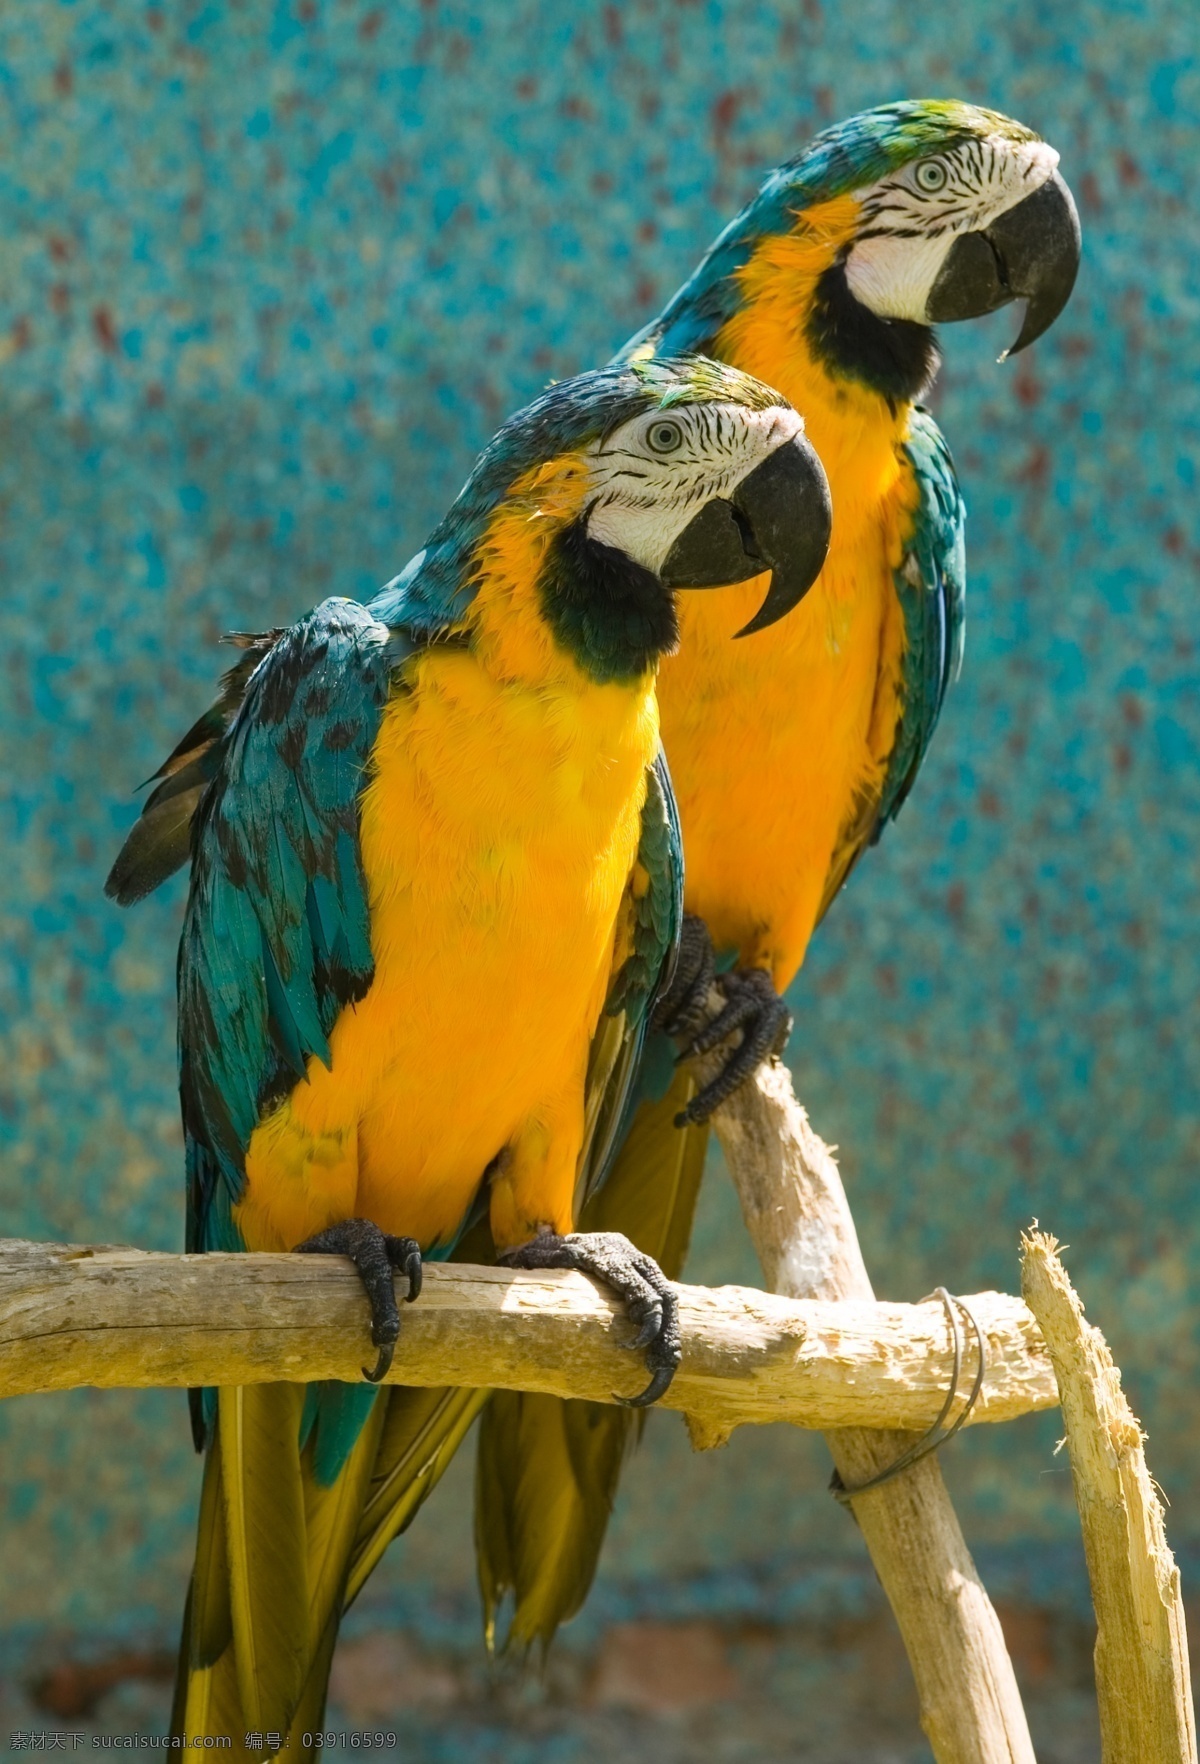 鹦鹉 黄色 漂亮 动物 鸟 眼睛 翅膀 婷婷玉立 木架 彩色 鸟类 生物世界